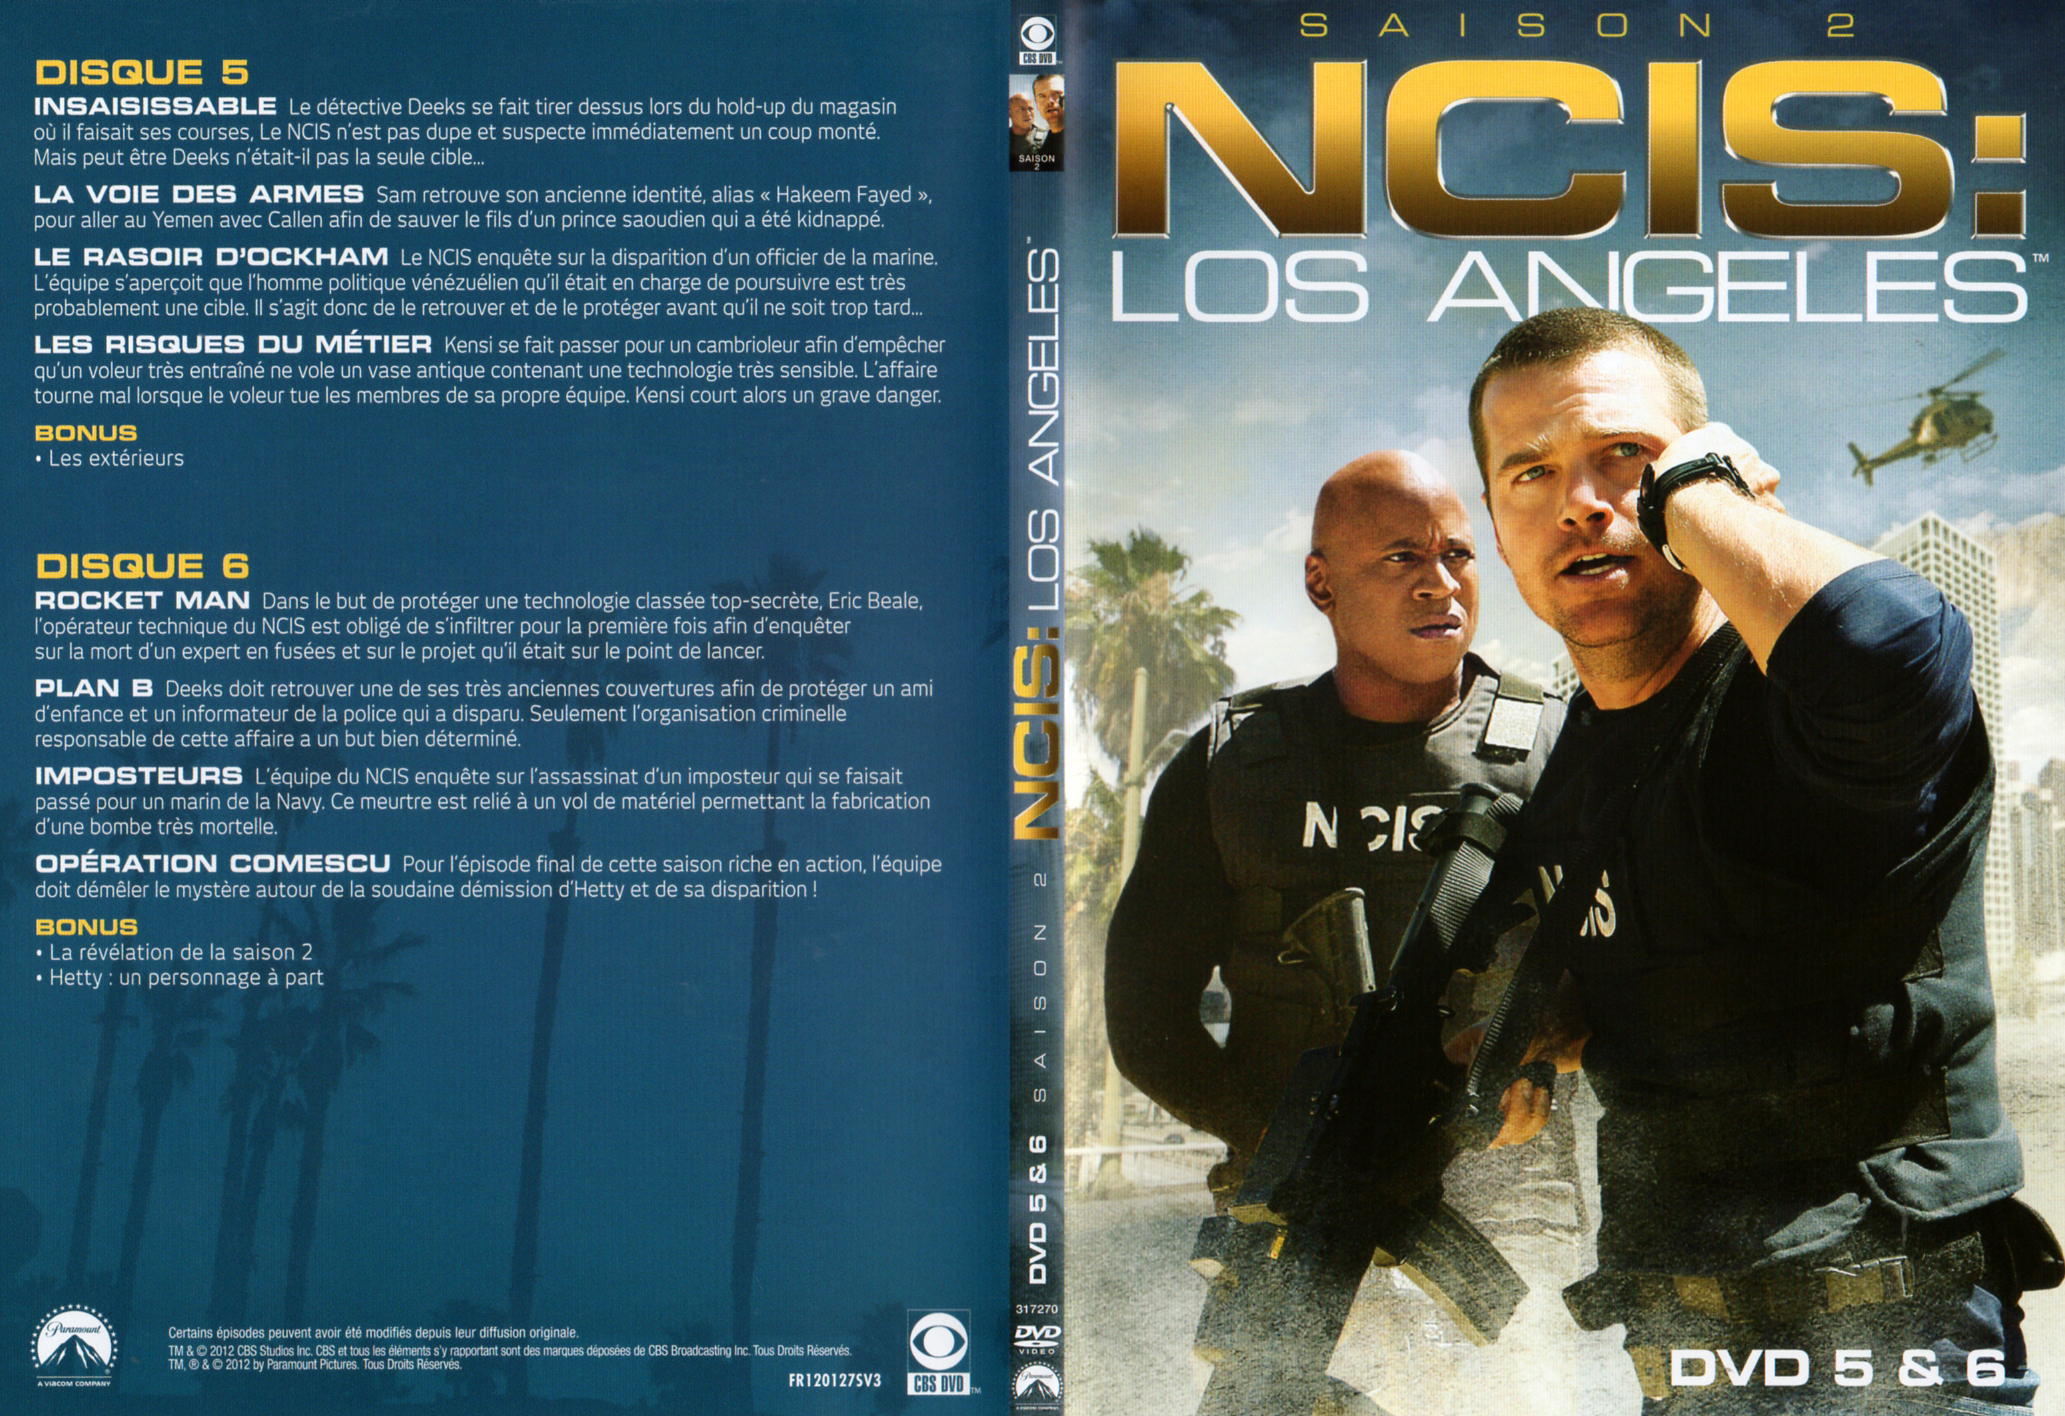 Jaquette DVD NCIS Los Angeles Saison 2 DVD 3